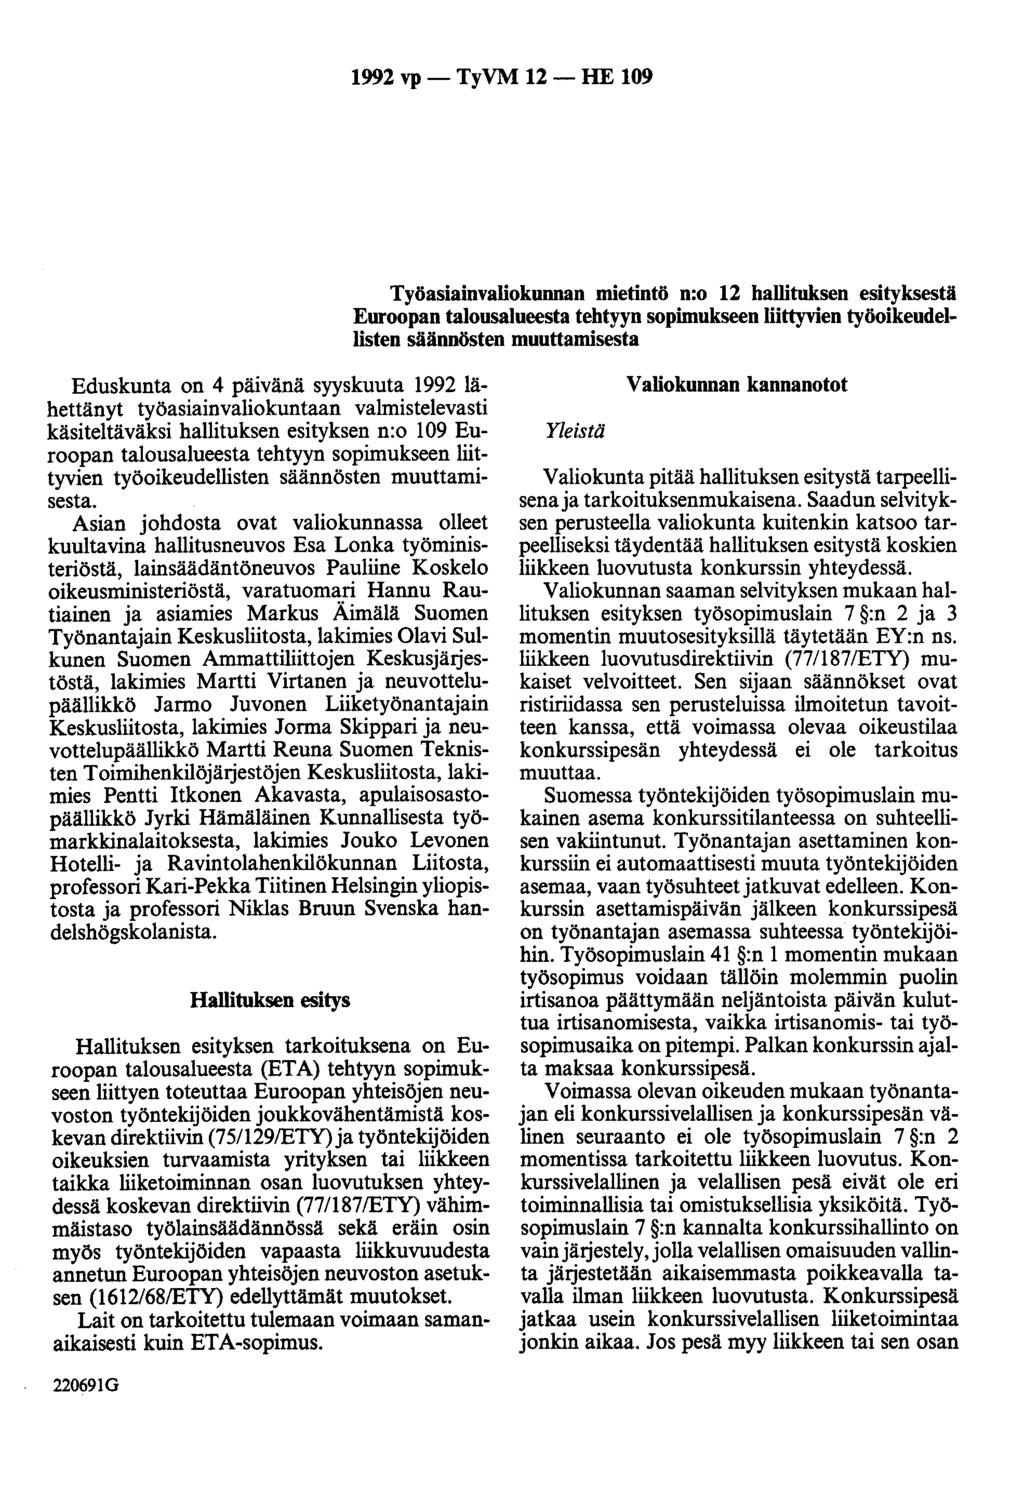 1992 vp - TyVM 12 - HE 109 Työasiainvaliokunnan mietintö n:o 12 hallituksen esityksestä Euroopan talousalueesta tehtyyn sopimukseen liittyvien työoikeudellisten säännösten muuttamisesta Eduskunta on